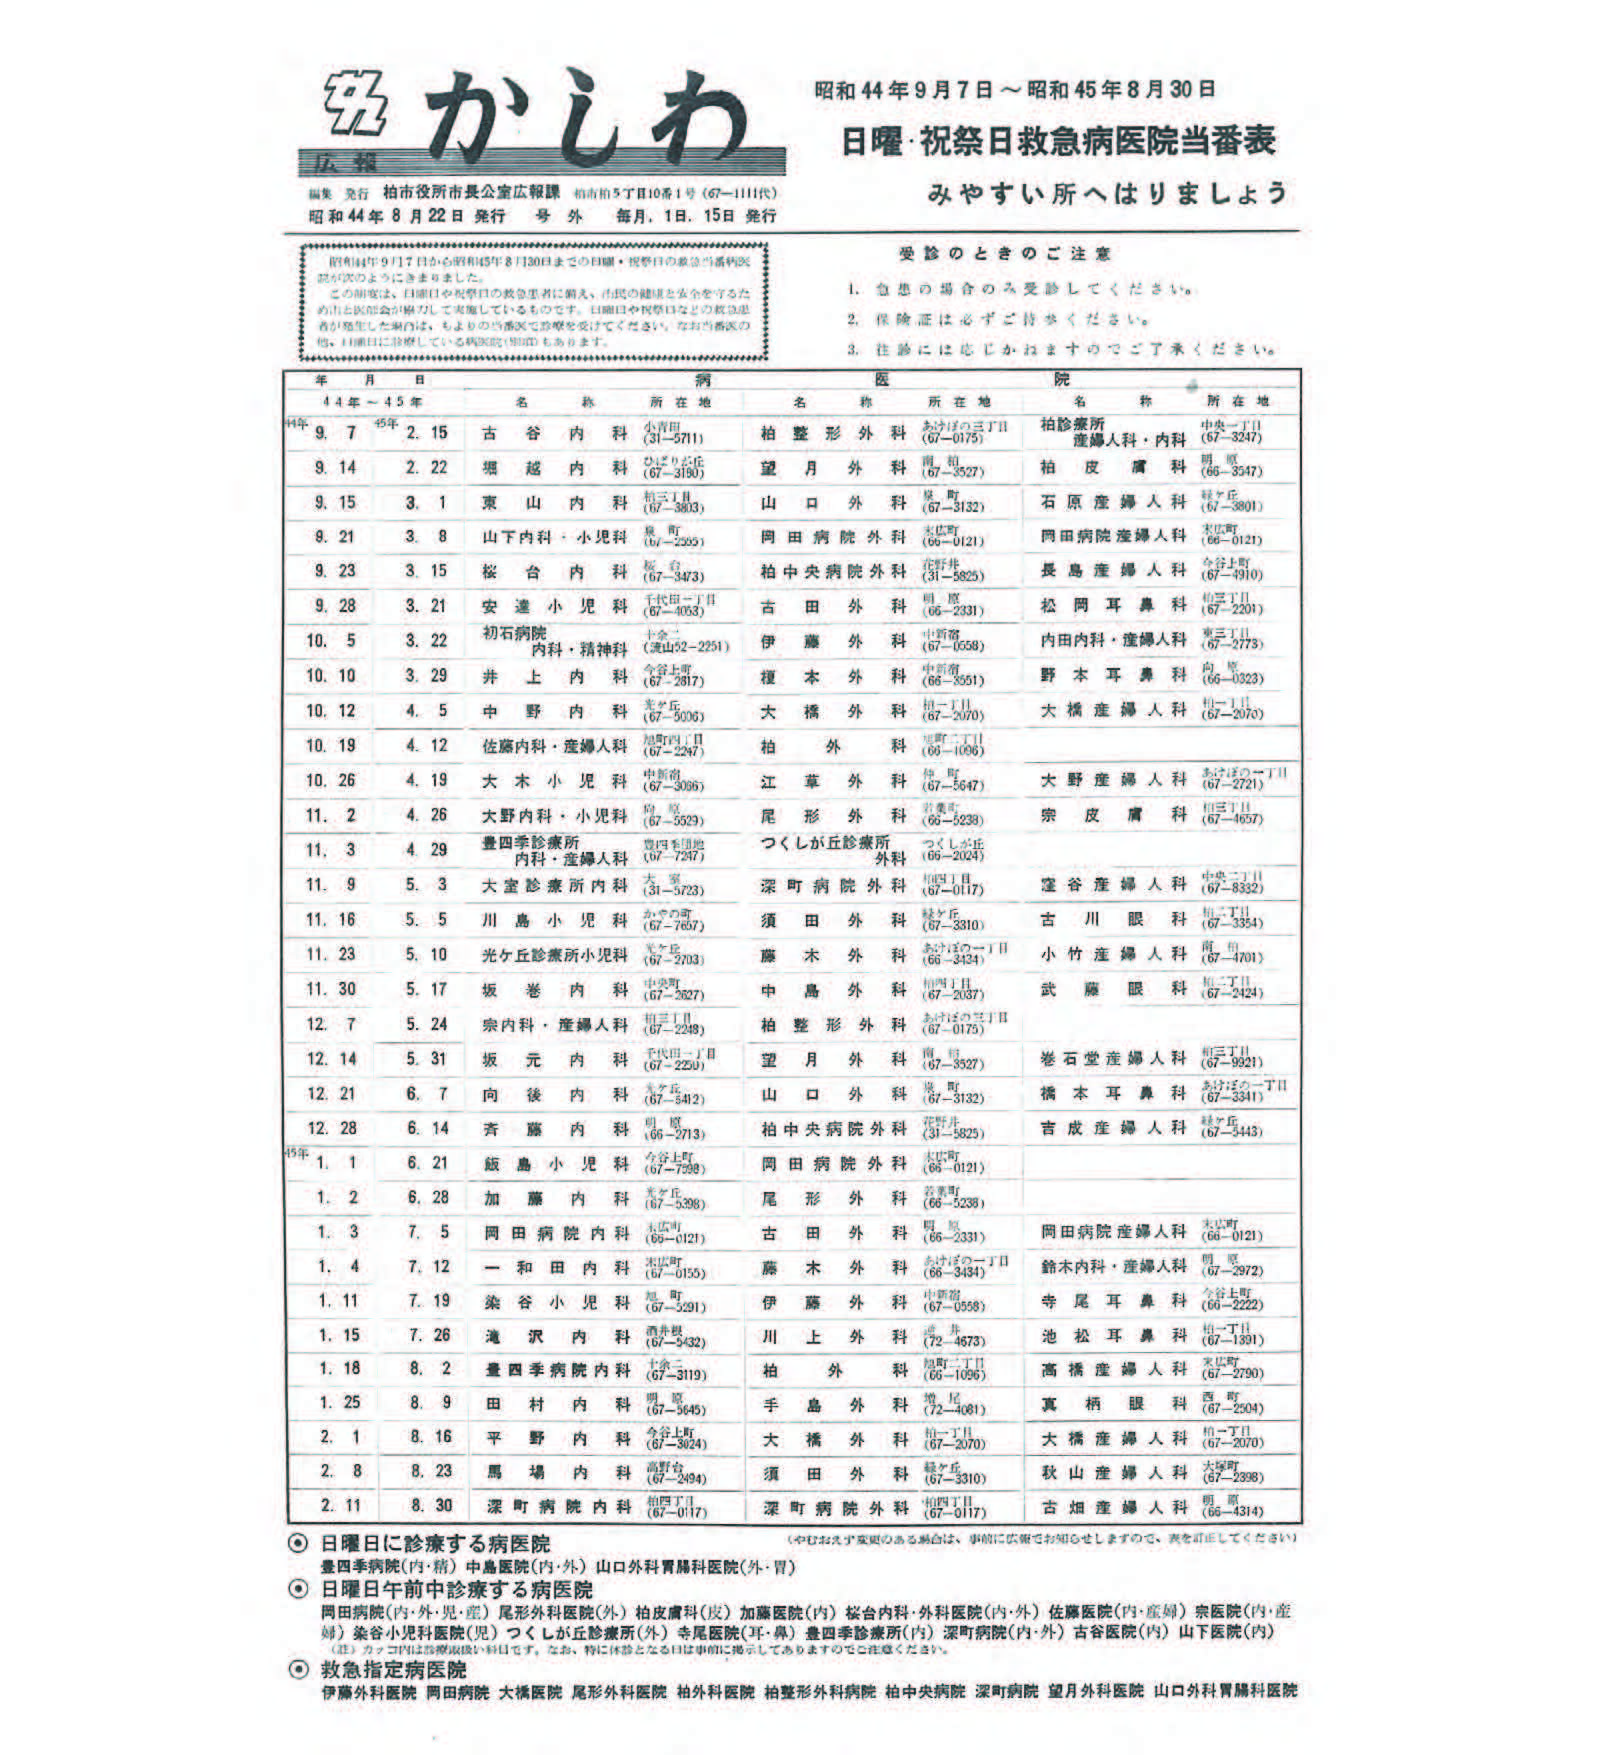 広報かしわ　昭和44年8月22日発行　189号